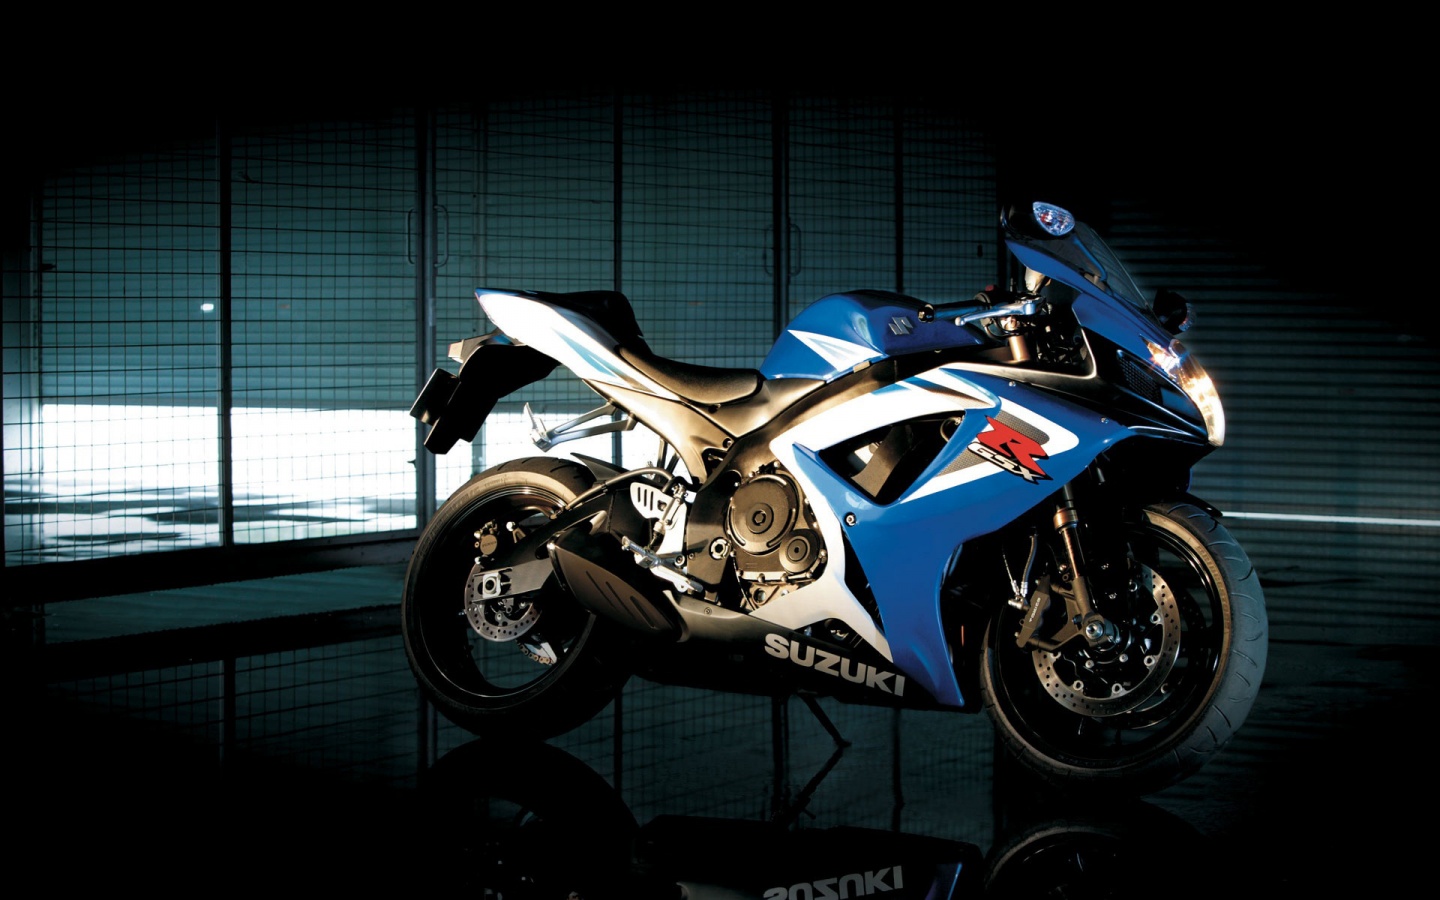 Motor Suzuki Hd - MotorCycle Backgrounds